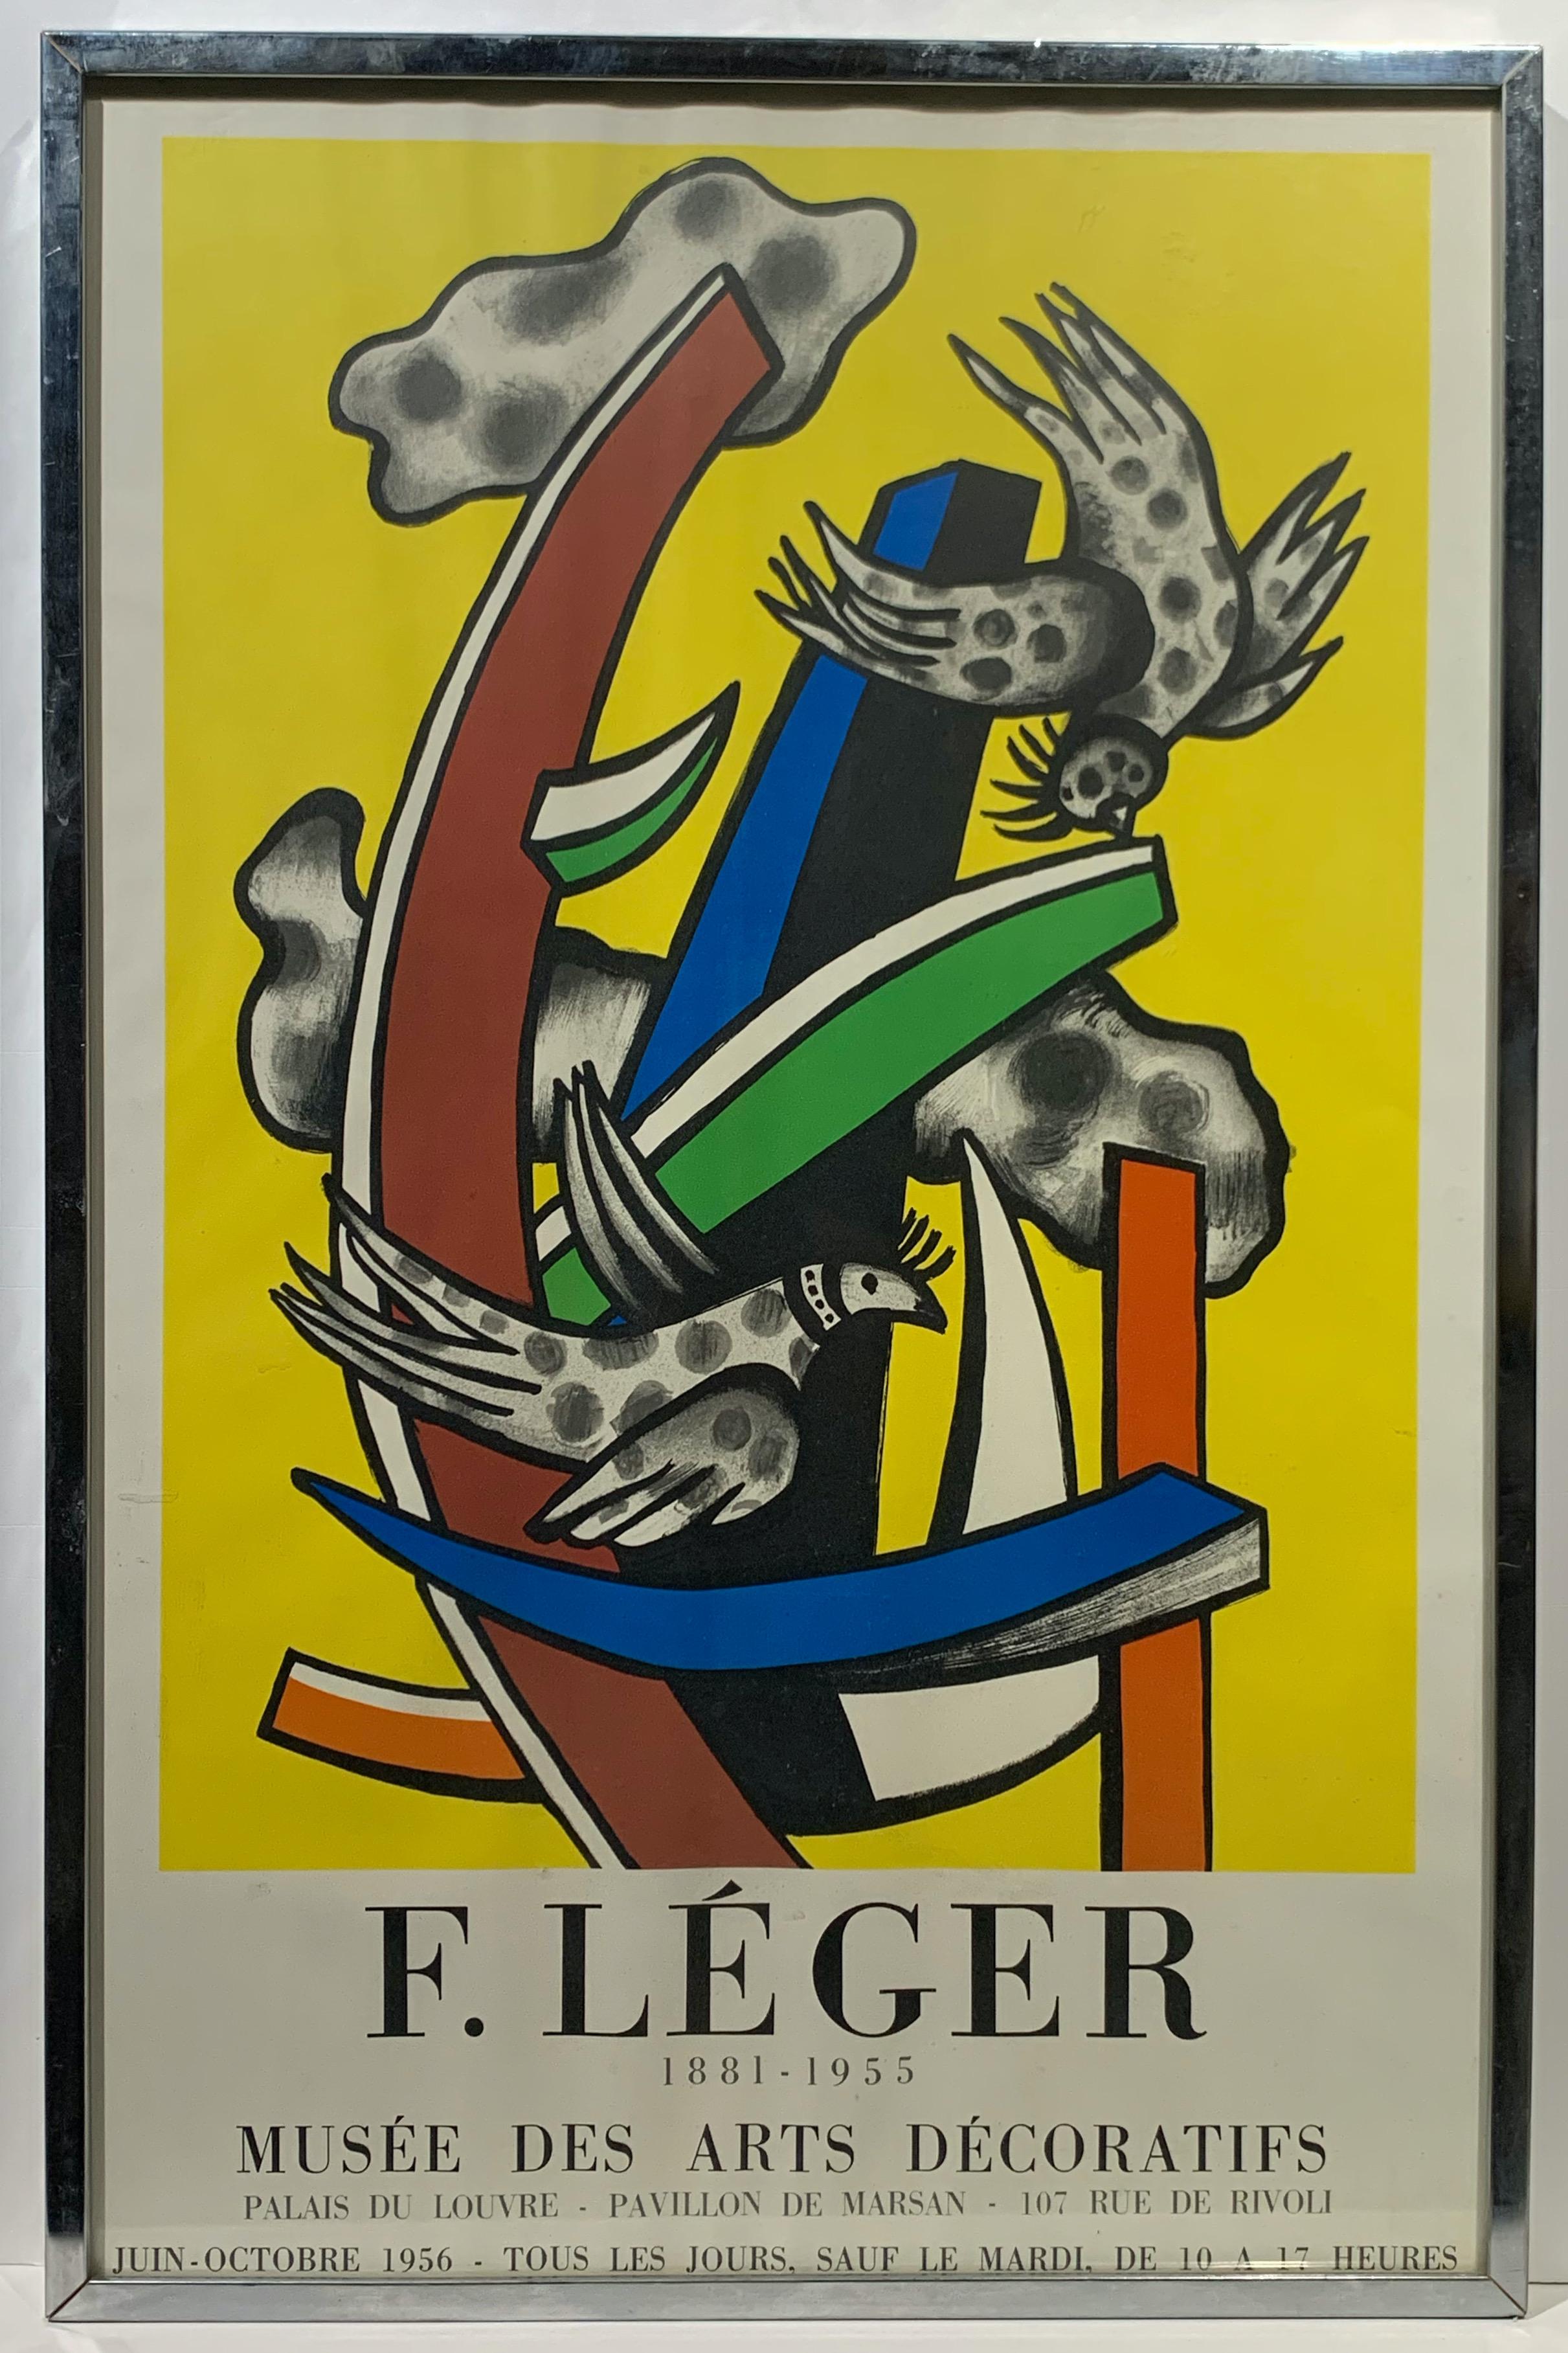 Fernand Léger Abstract Print - 1956 Fernand Leger Mourlot Exhibition Poster